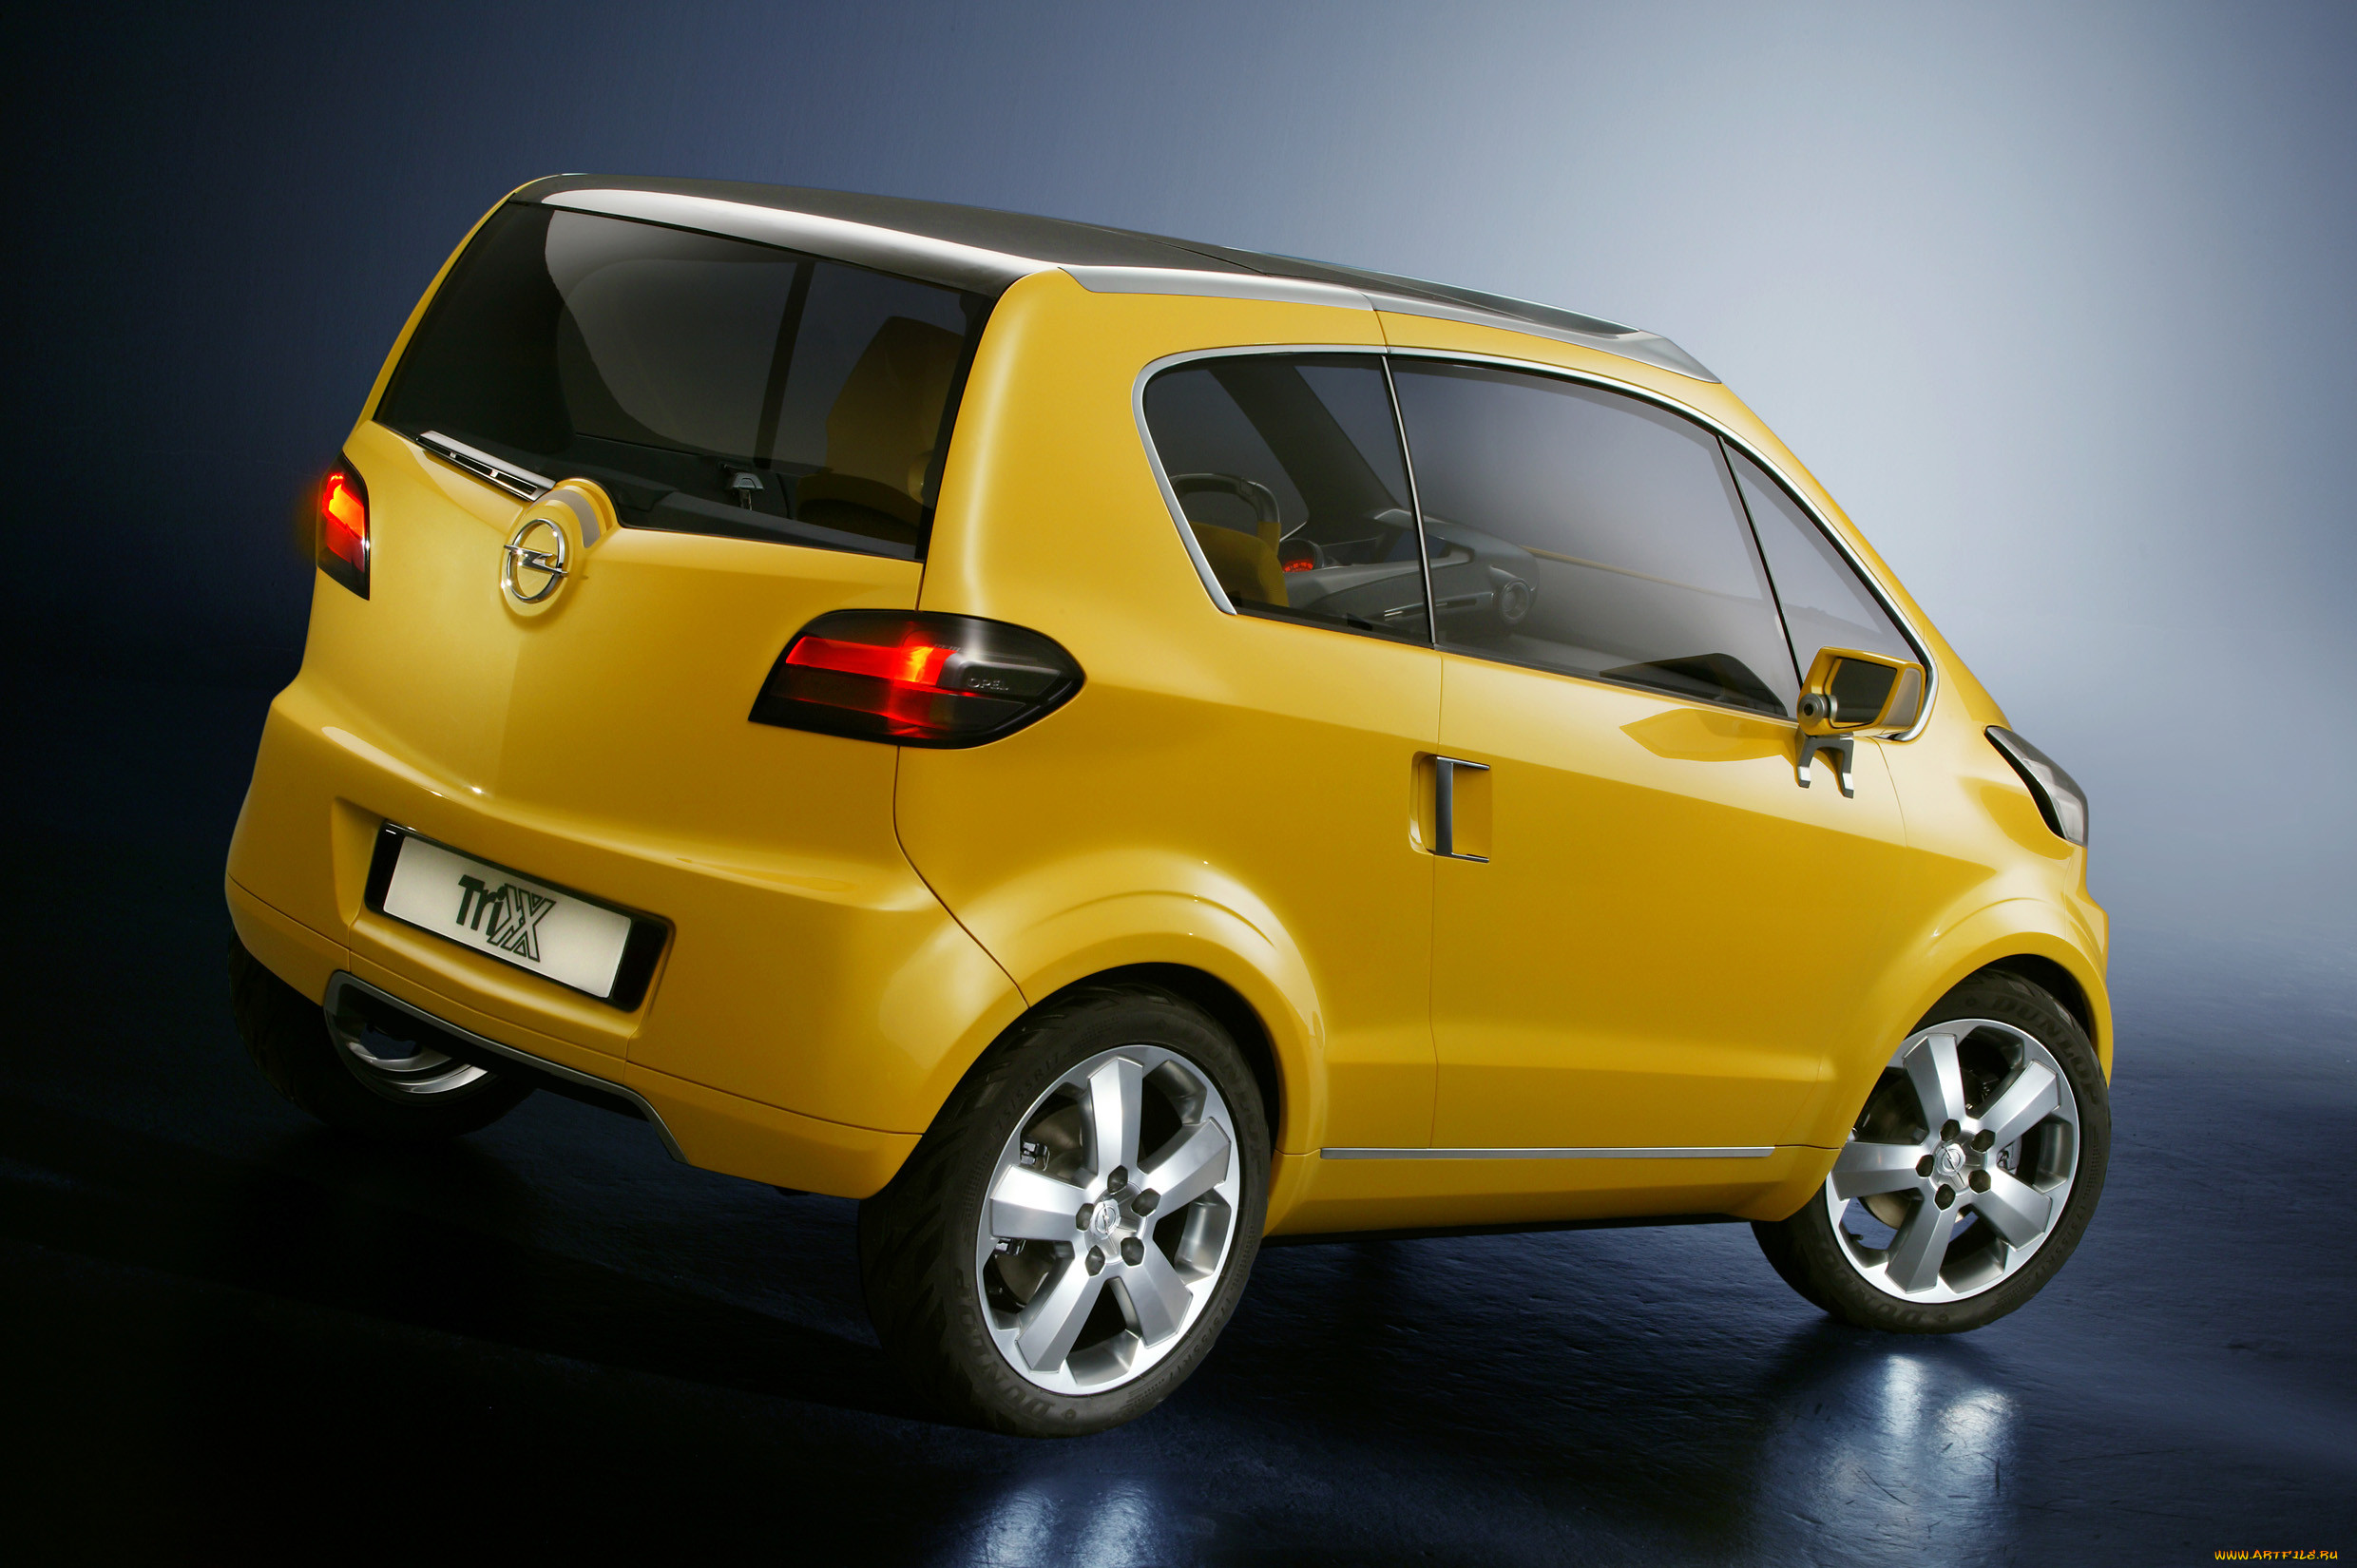 Продажа малолитражек. Opel Trixx. Форд малолитражка. Opel Trixx Concept. Сузуки малолитражка модель.